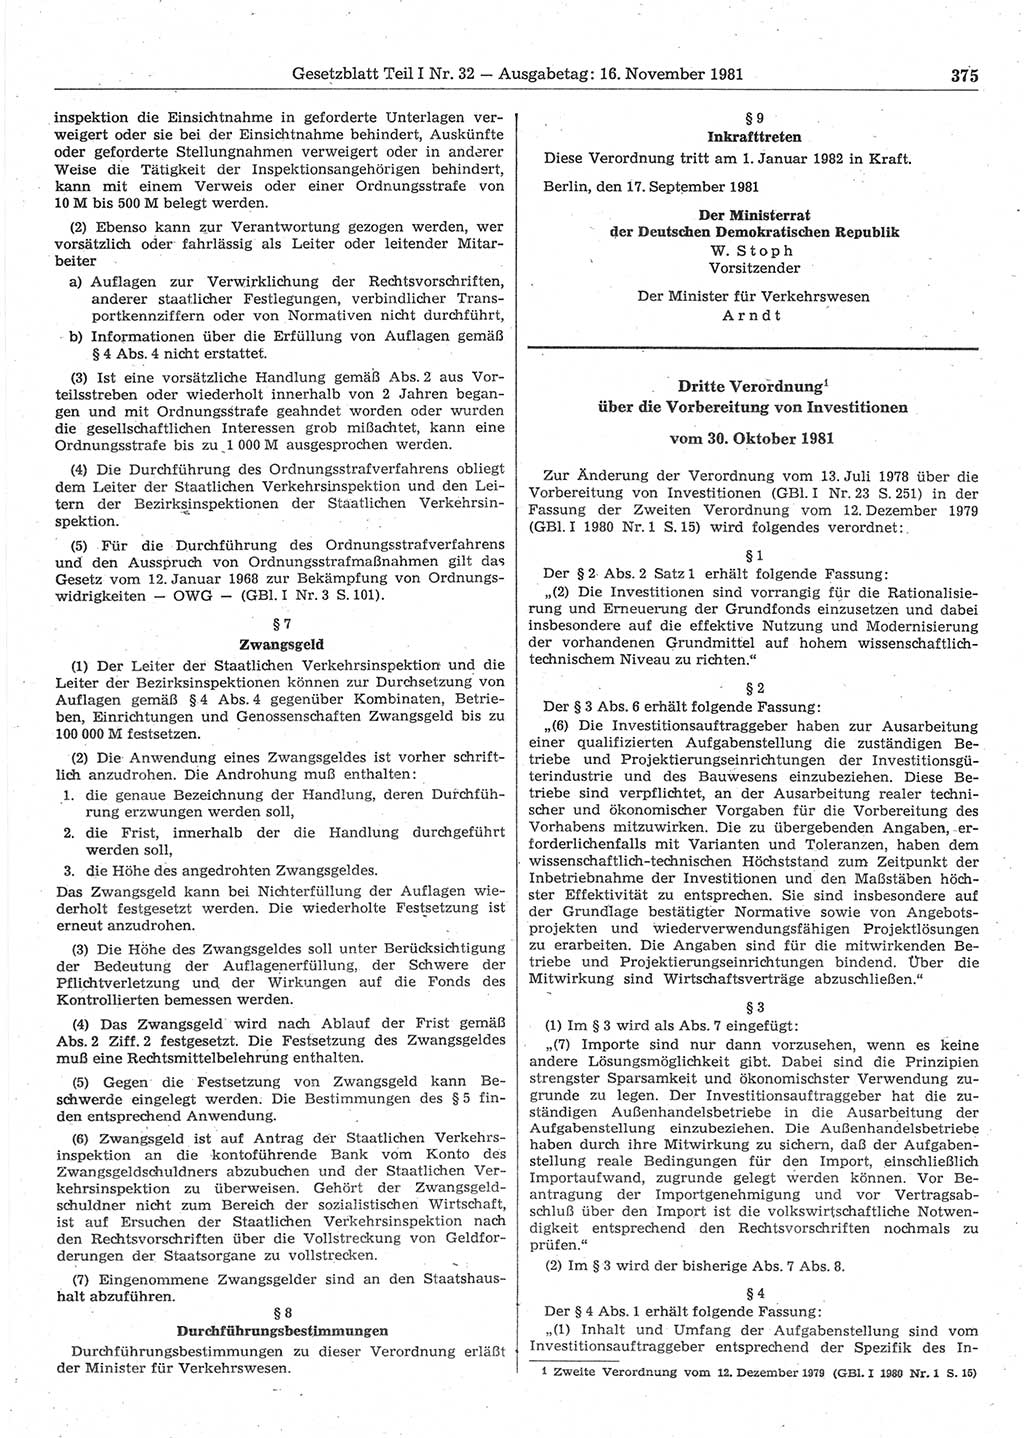 Gesetzblatt (GBl.) der Deutschen Demokratischen Republik (DDR) Teil Ⅰ 1981, Seite 375 (GBl. DDR Ⅰ 1981, S. 375)